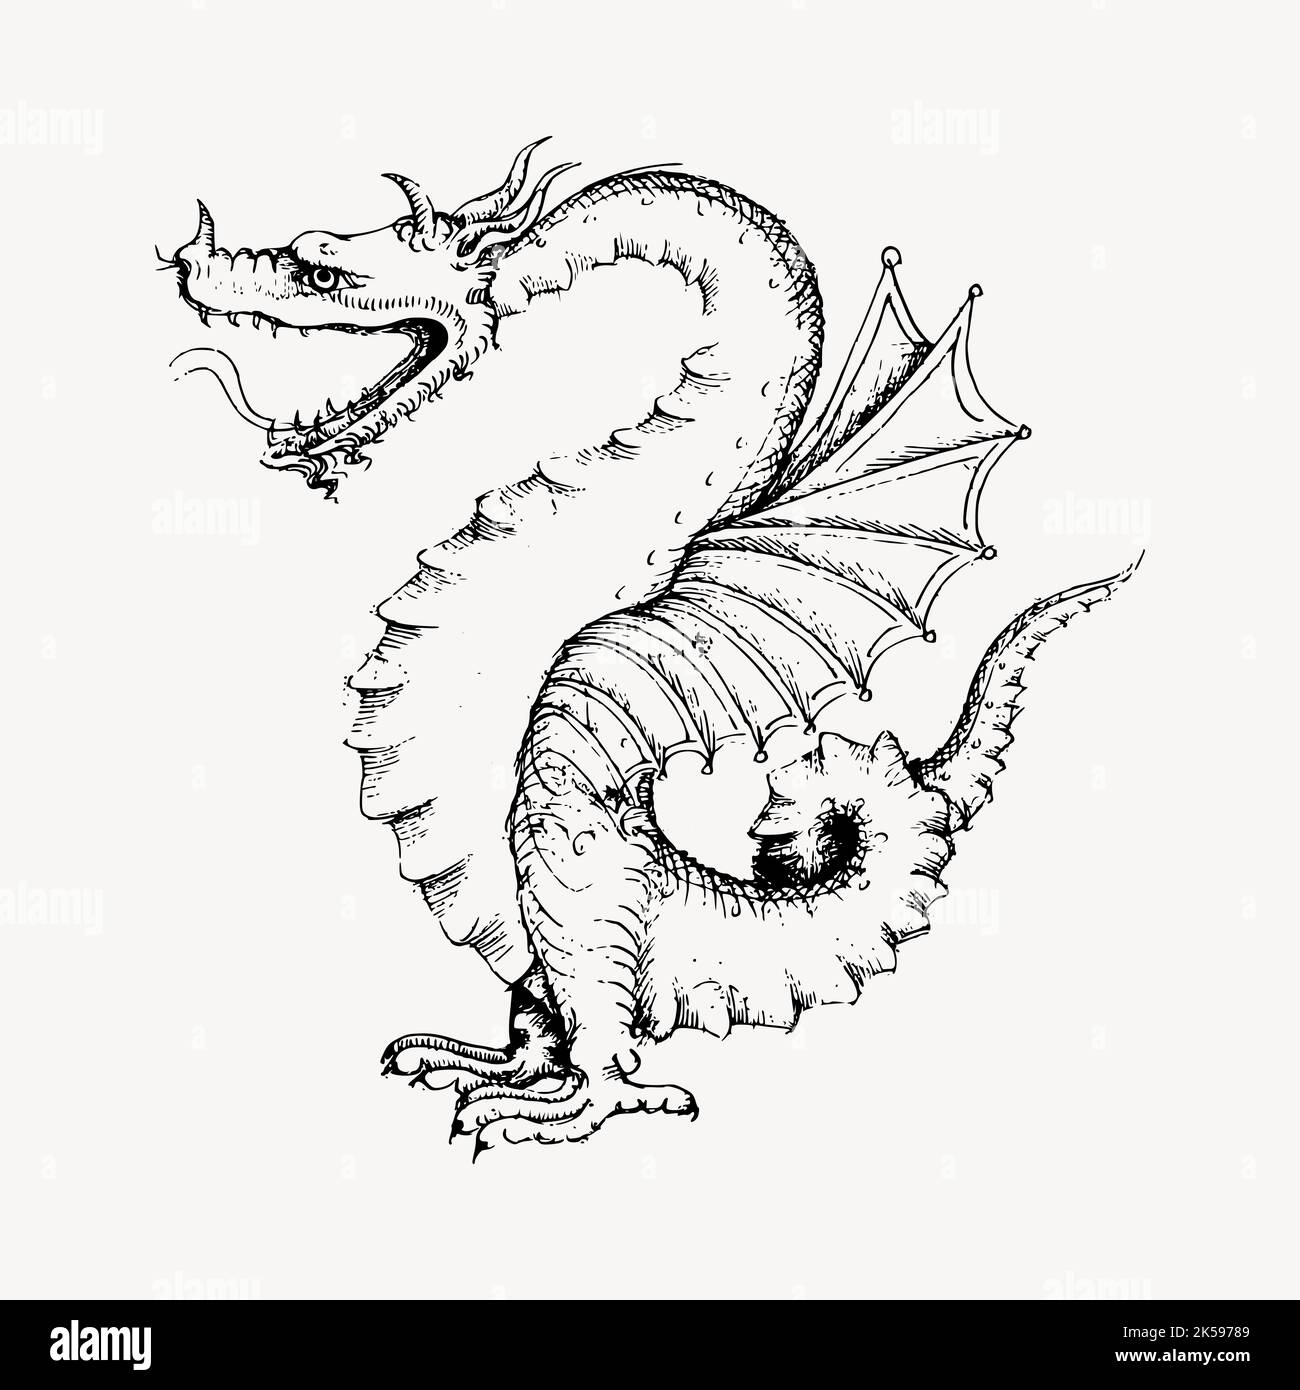 Disegno del drago, vettore di illustrazione di creatura mitica vintage. Illustrazione Vettoriale